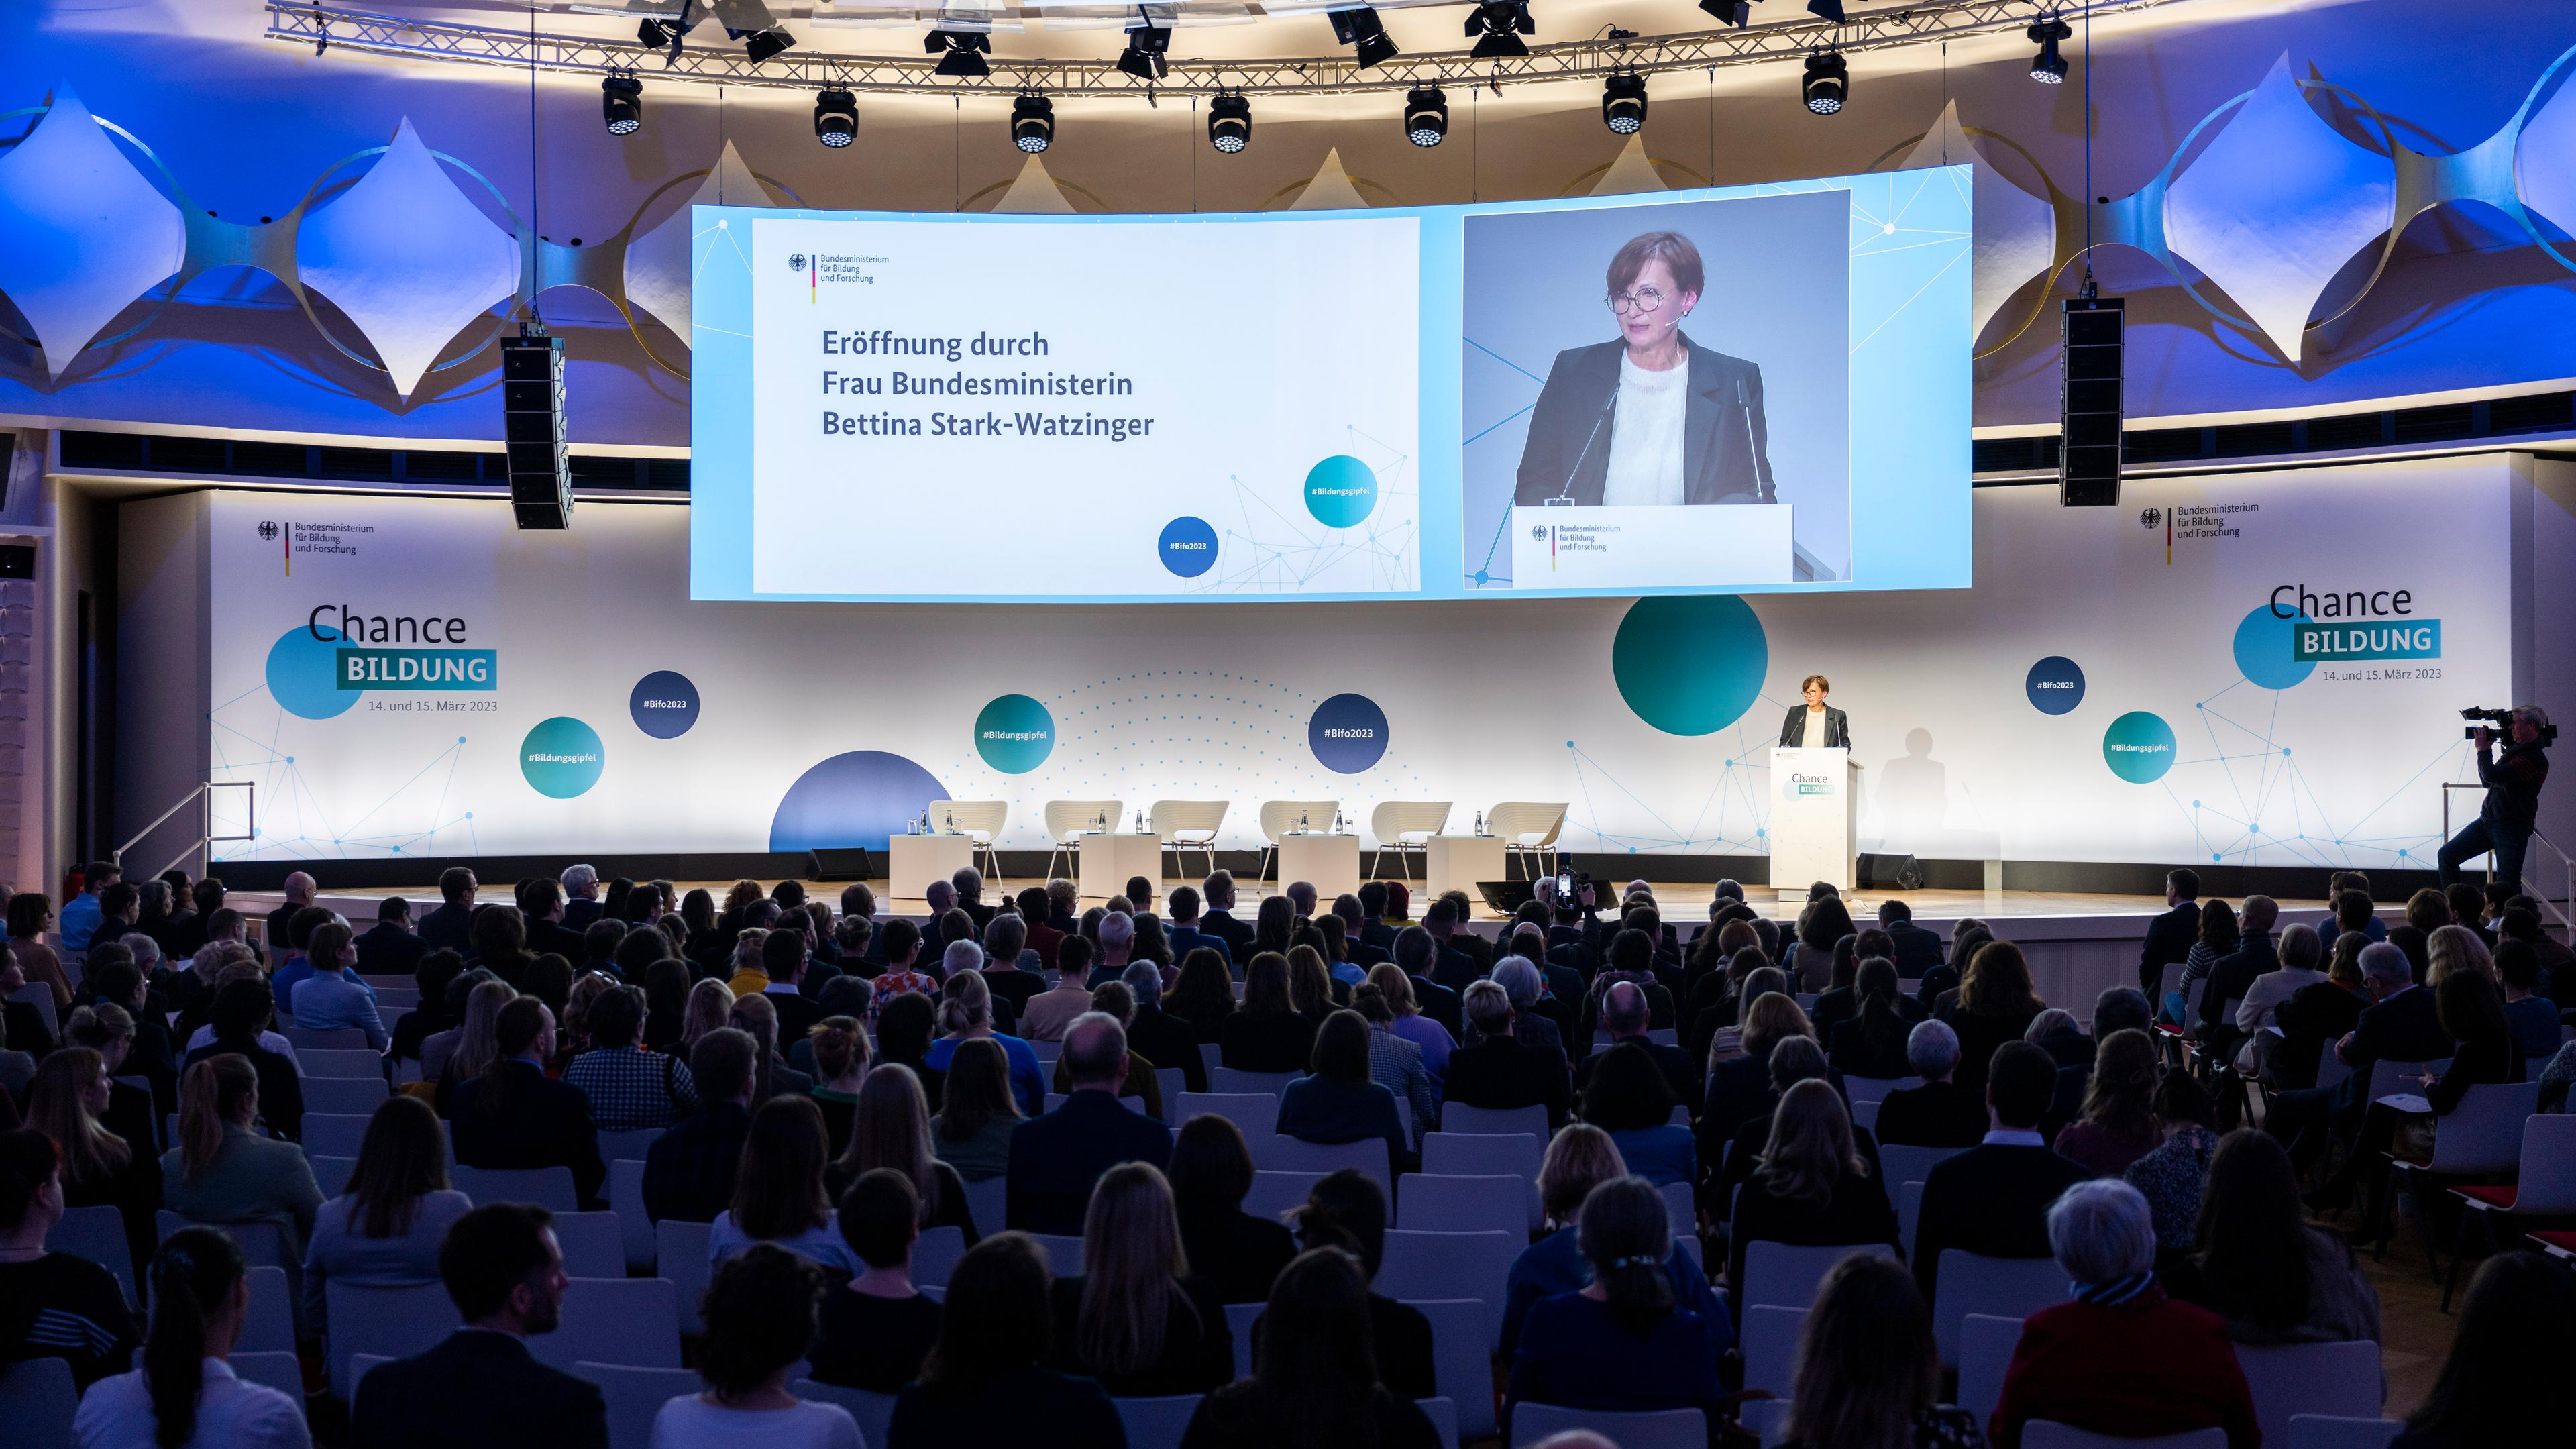  Bettina Stark-Watzinger (FDP), Bundesministerin für Bildung und Forschung, spricht beim Bildungsgipfel